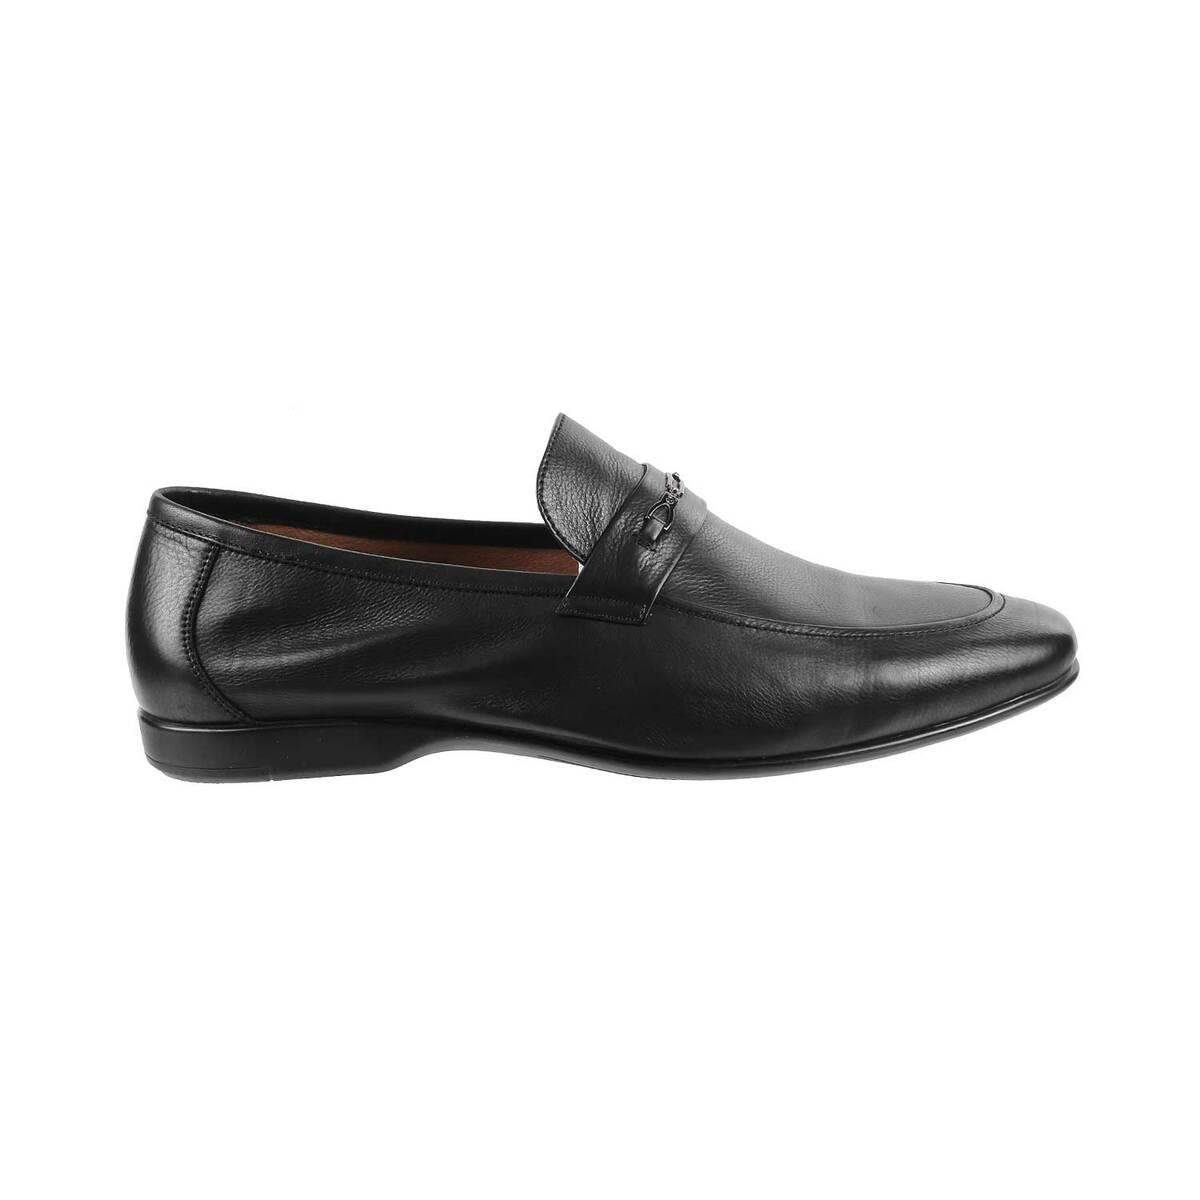 Buy Men Black Formal Moccasin Online | SKU: 14-1105-11-40-Metro Shoes